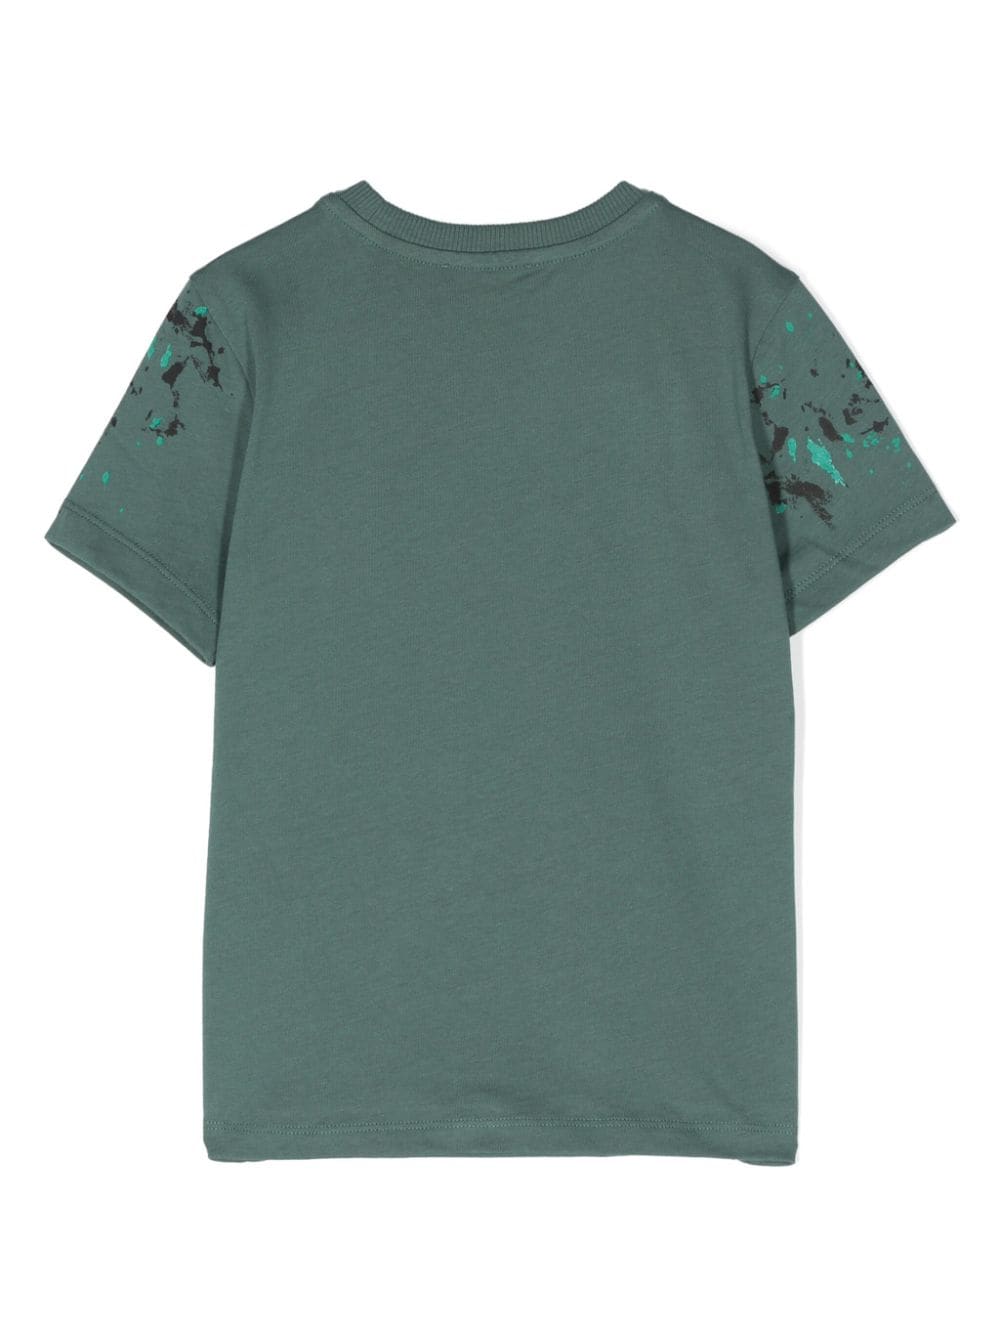 Moschino Green Paint Splash Logo Tee Shirt